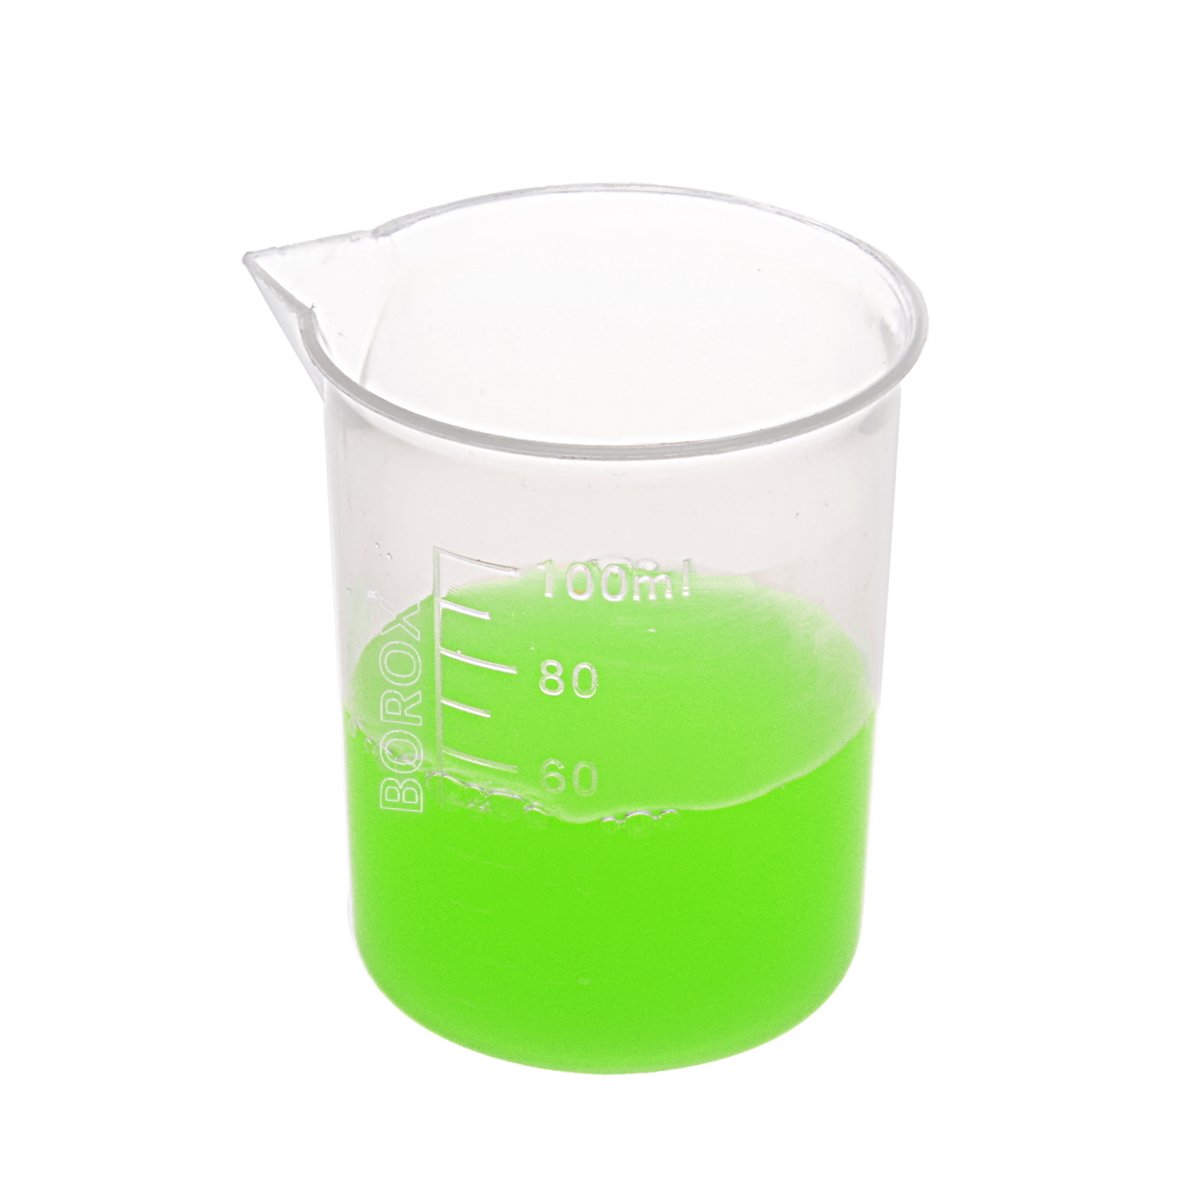 Borox Plastik Beher 100 ml - Kabartma Dereceli Ölçülü Beaker